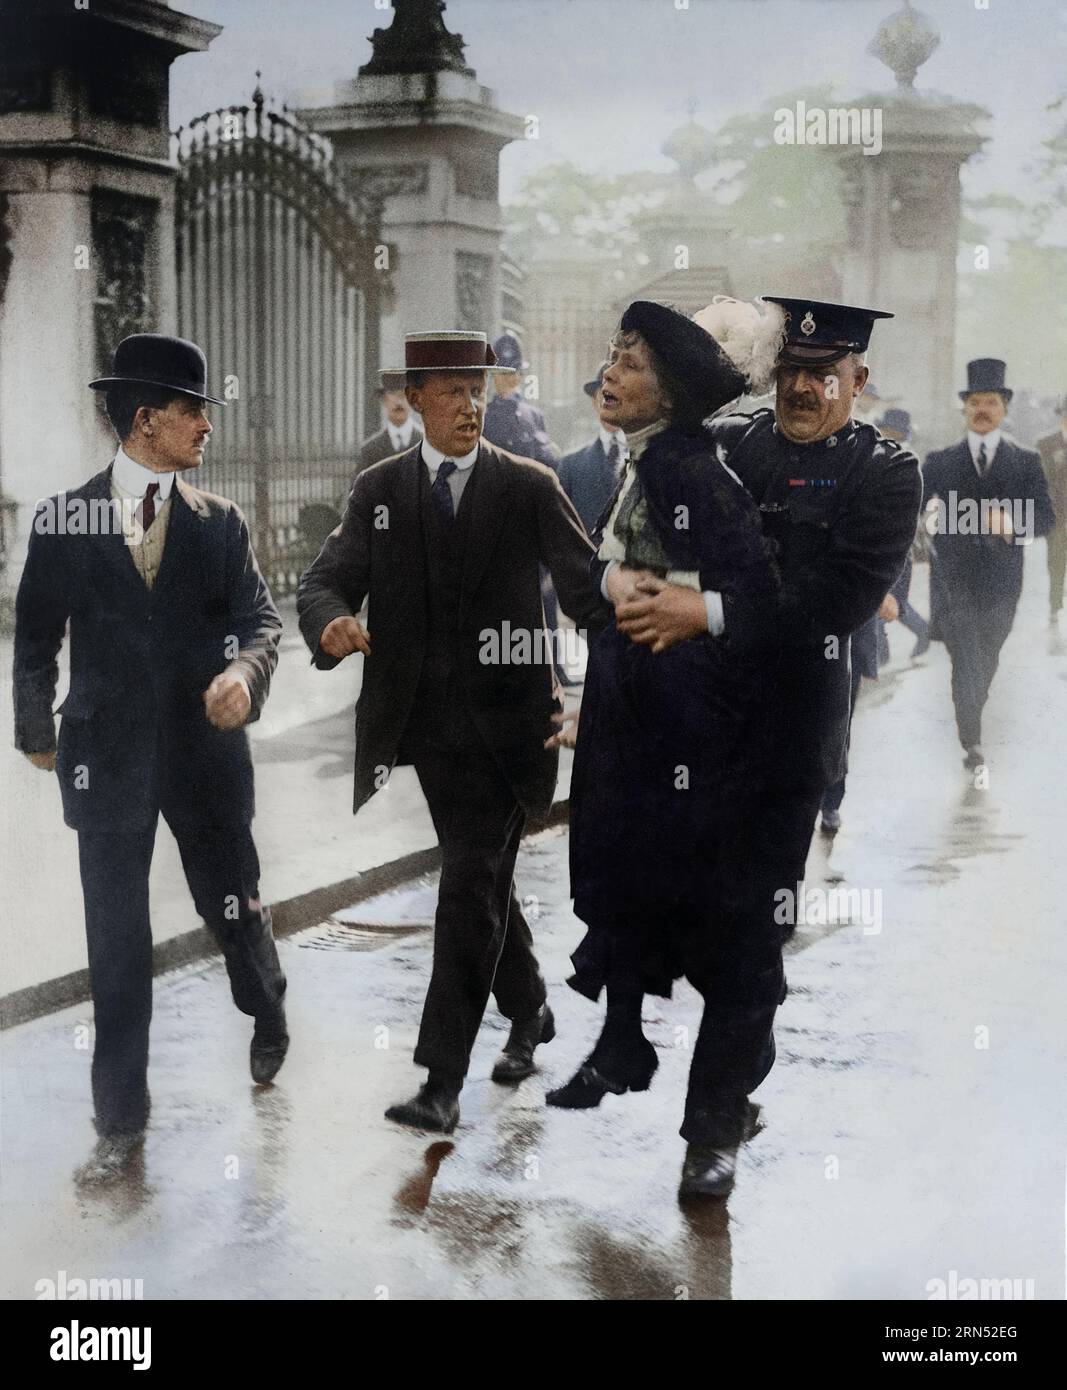 Frau Emmeline Pankhurst, die Anführerin der Suffragette-Frauenbewegung, wird von Superintendant Rolfe vor dem Buckingham Palace, London, festgenommen Stockfoto